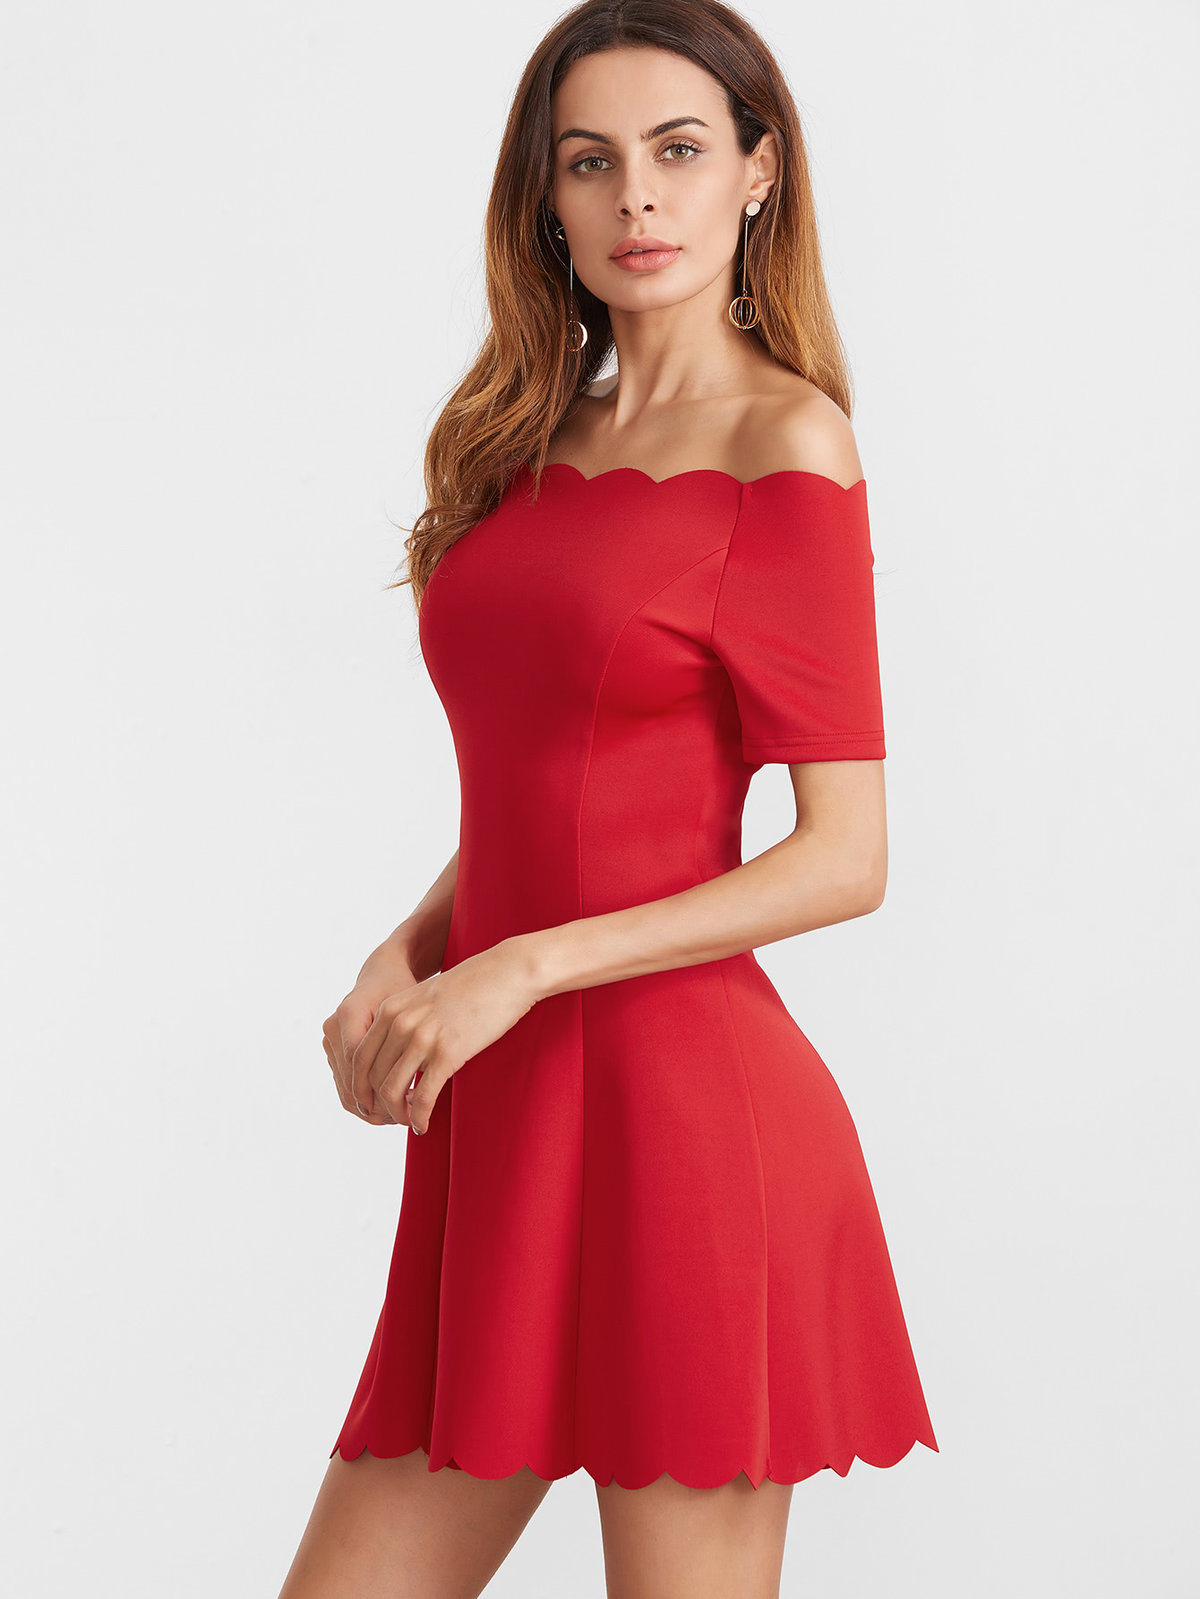 красное платье с открытыми плечами фото